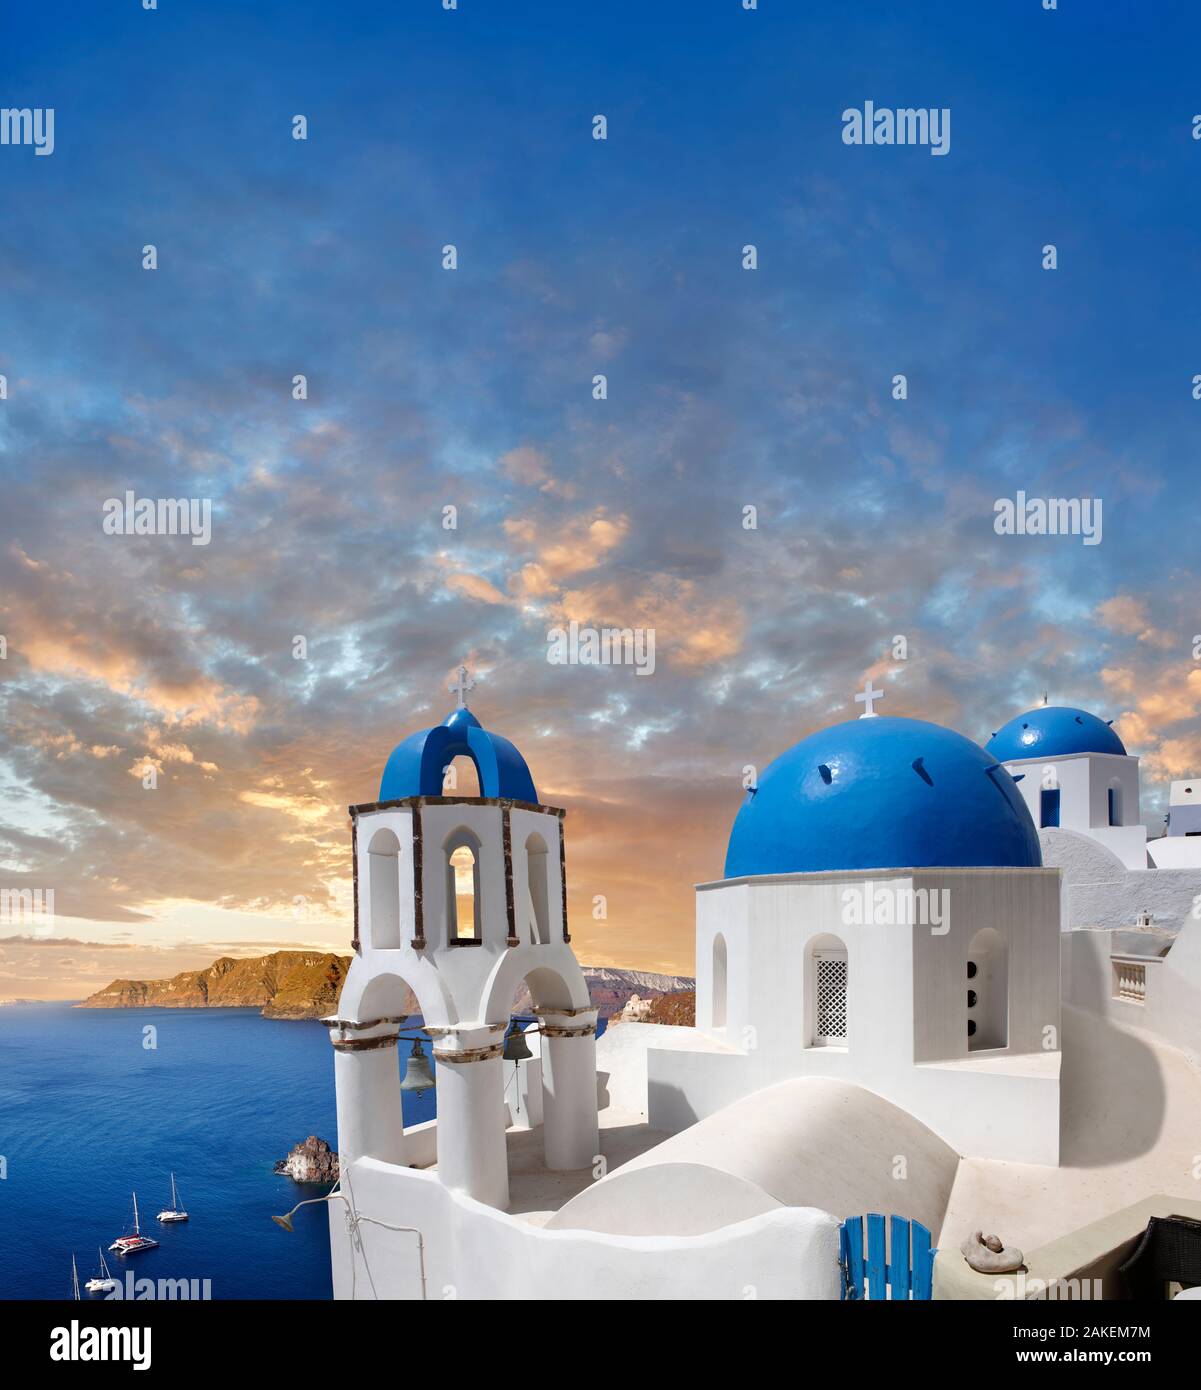 Puesta de sol sobre las iglesias ortodoxas griegas tradicionales de Oia (Ia), Cyclades Isla de Thira, Santorini, Grecia. La solución de la Oficina había sido mencionar Foto de stock